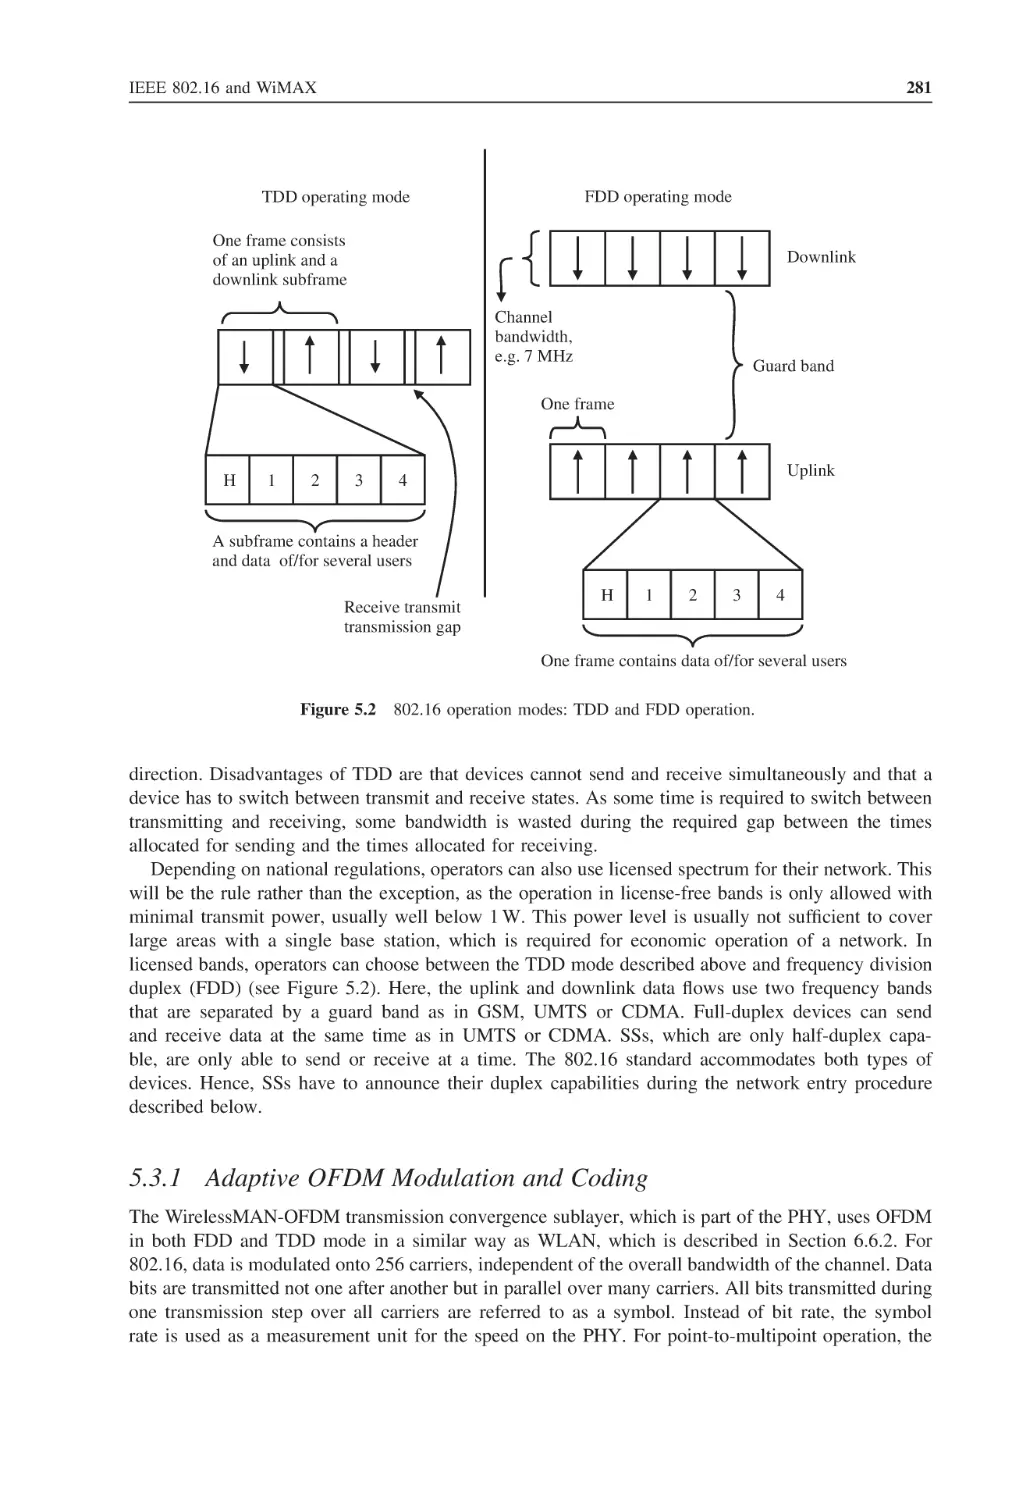 5.3.1 Adaptive OFDM Modulation and Coding